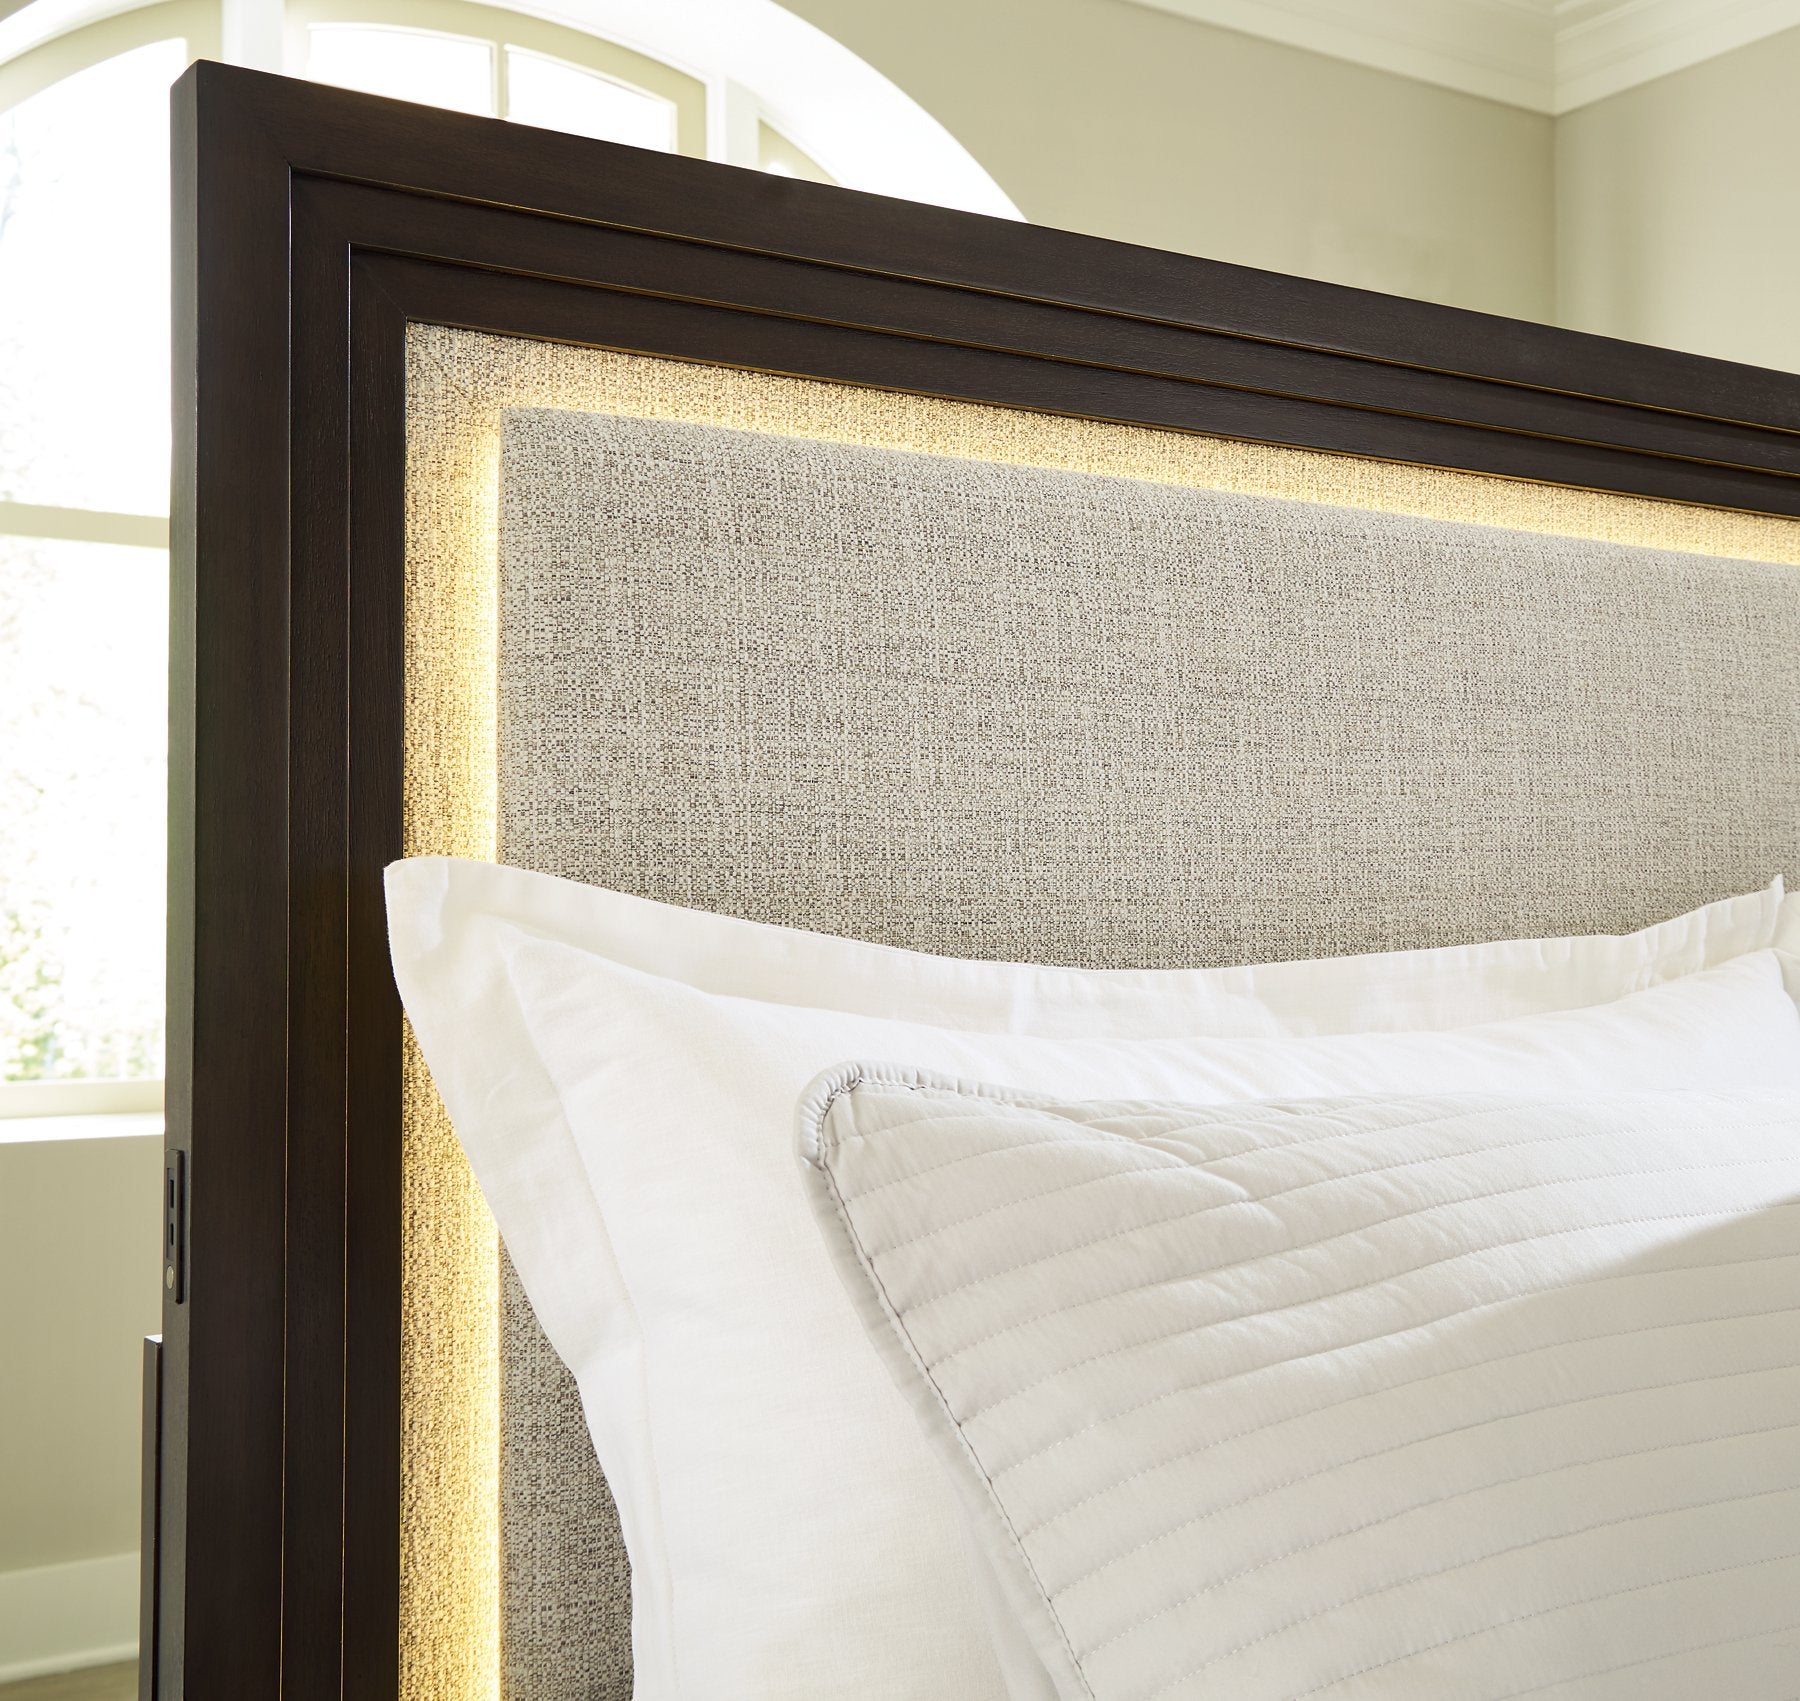 Neymorton Upholstered Bed - Romeo & Juliet Furniture (Warren,MI)